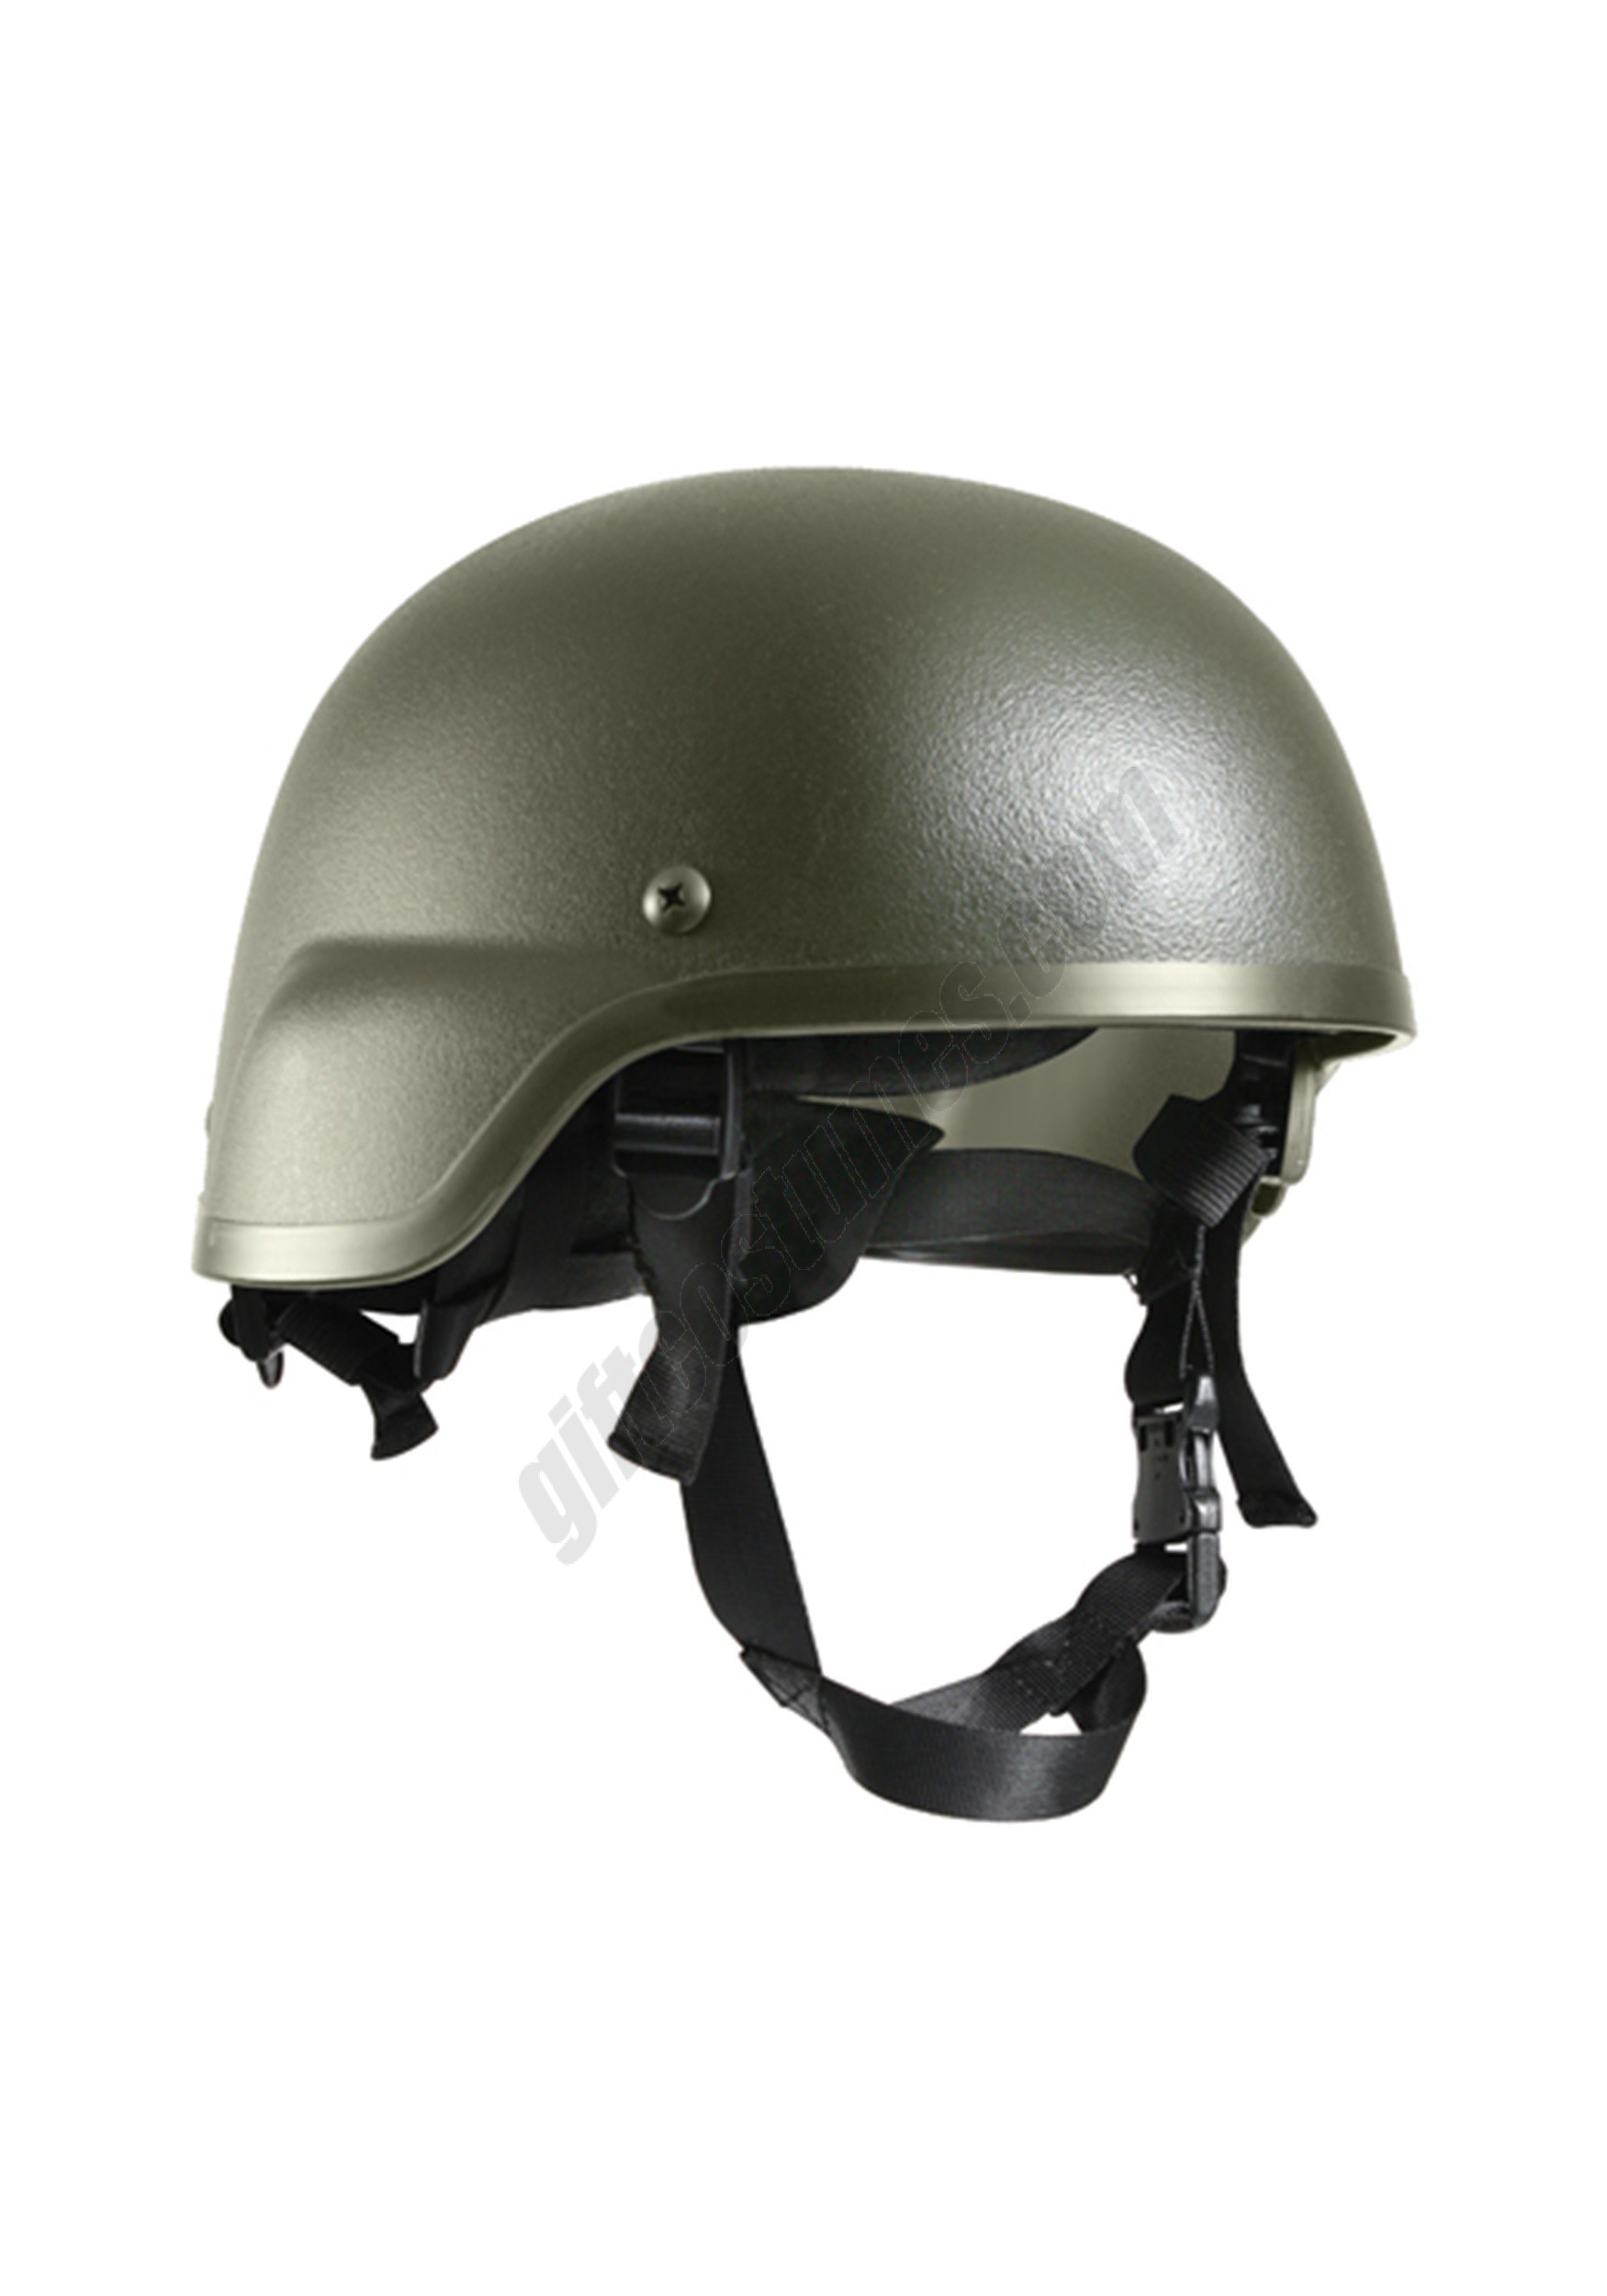 Adult Green Tactical Helmet Promotions - Adult Green Tactical Helmet Promotions